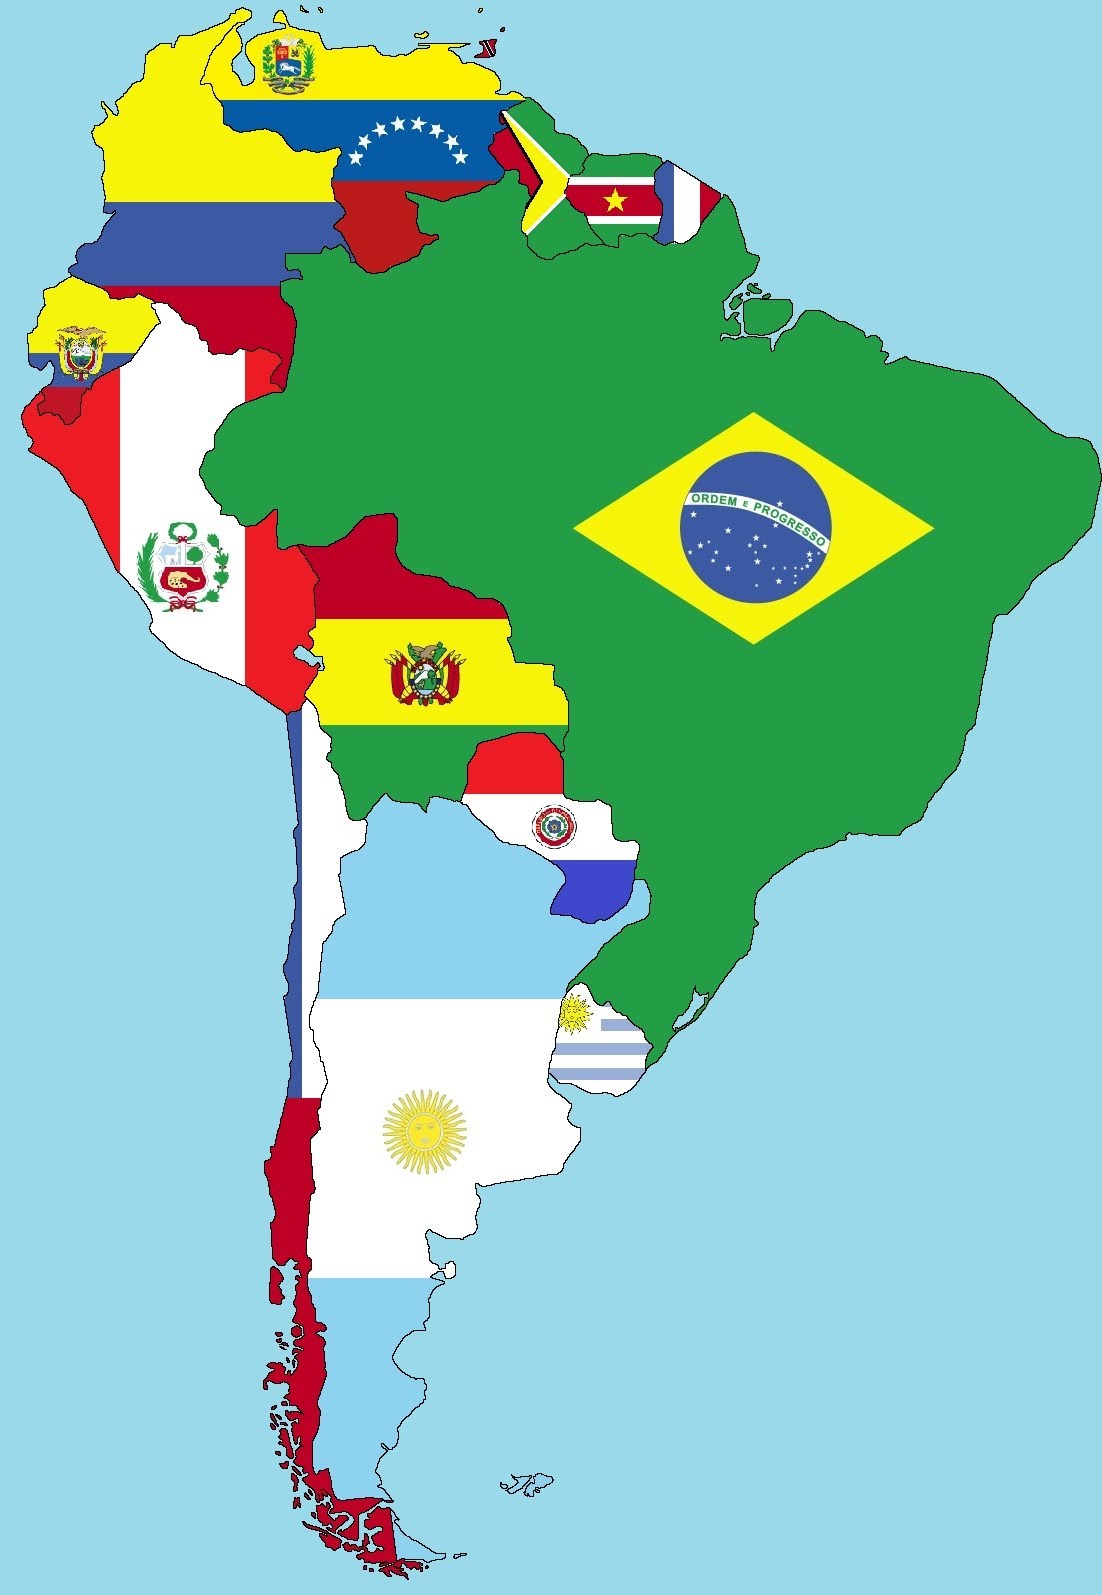 Mapa de America del Sur - Mapa Físico, Geográfico, Político, turístico